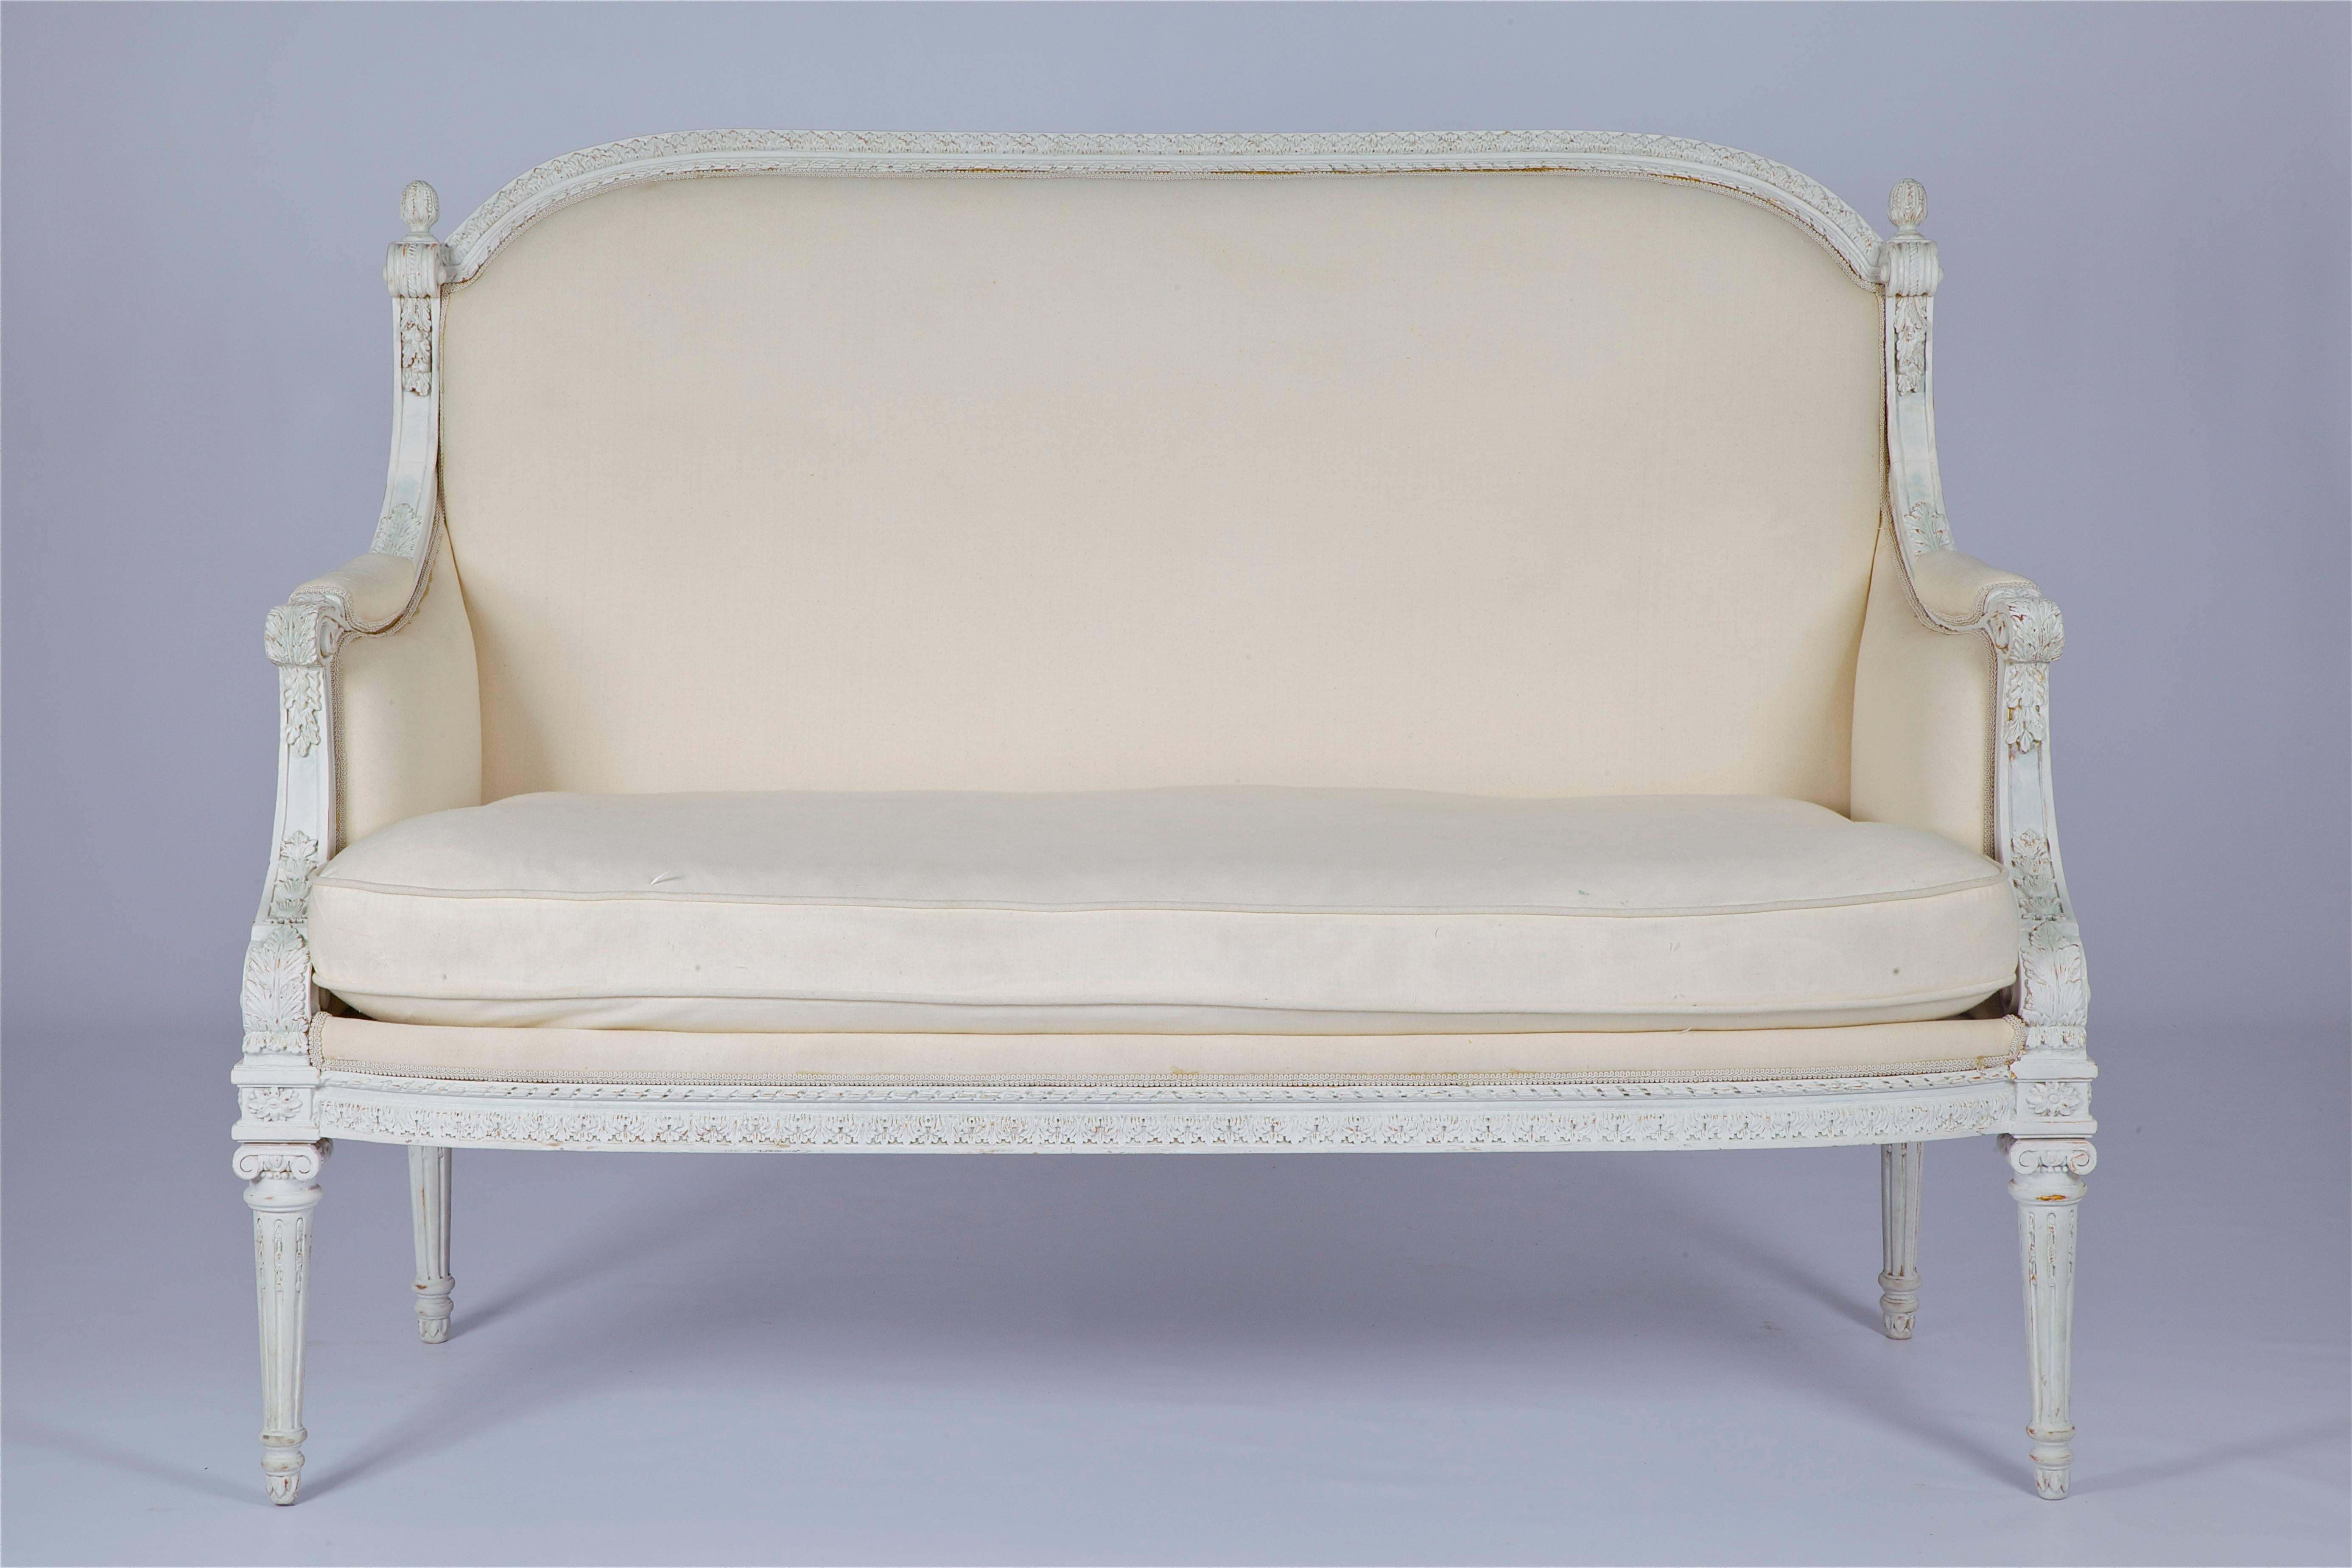 Zweisitziges französisches Sofa im Louis-XVI-Stil, handgeschnitzt aus Massivholz, gepolstert mit weißem Kattun und lackiert mit gealtertem weißem Gesso.